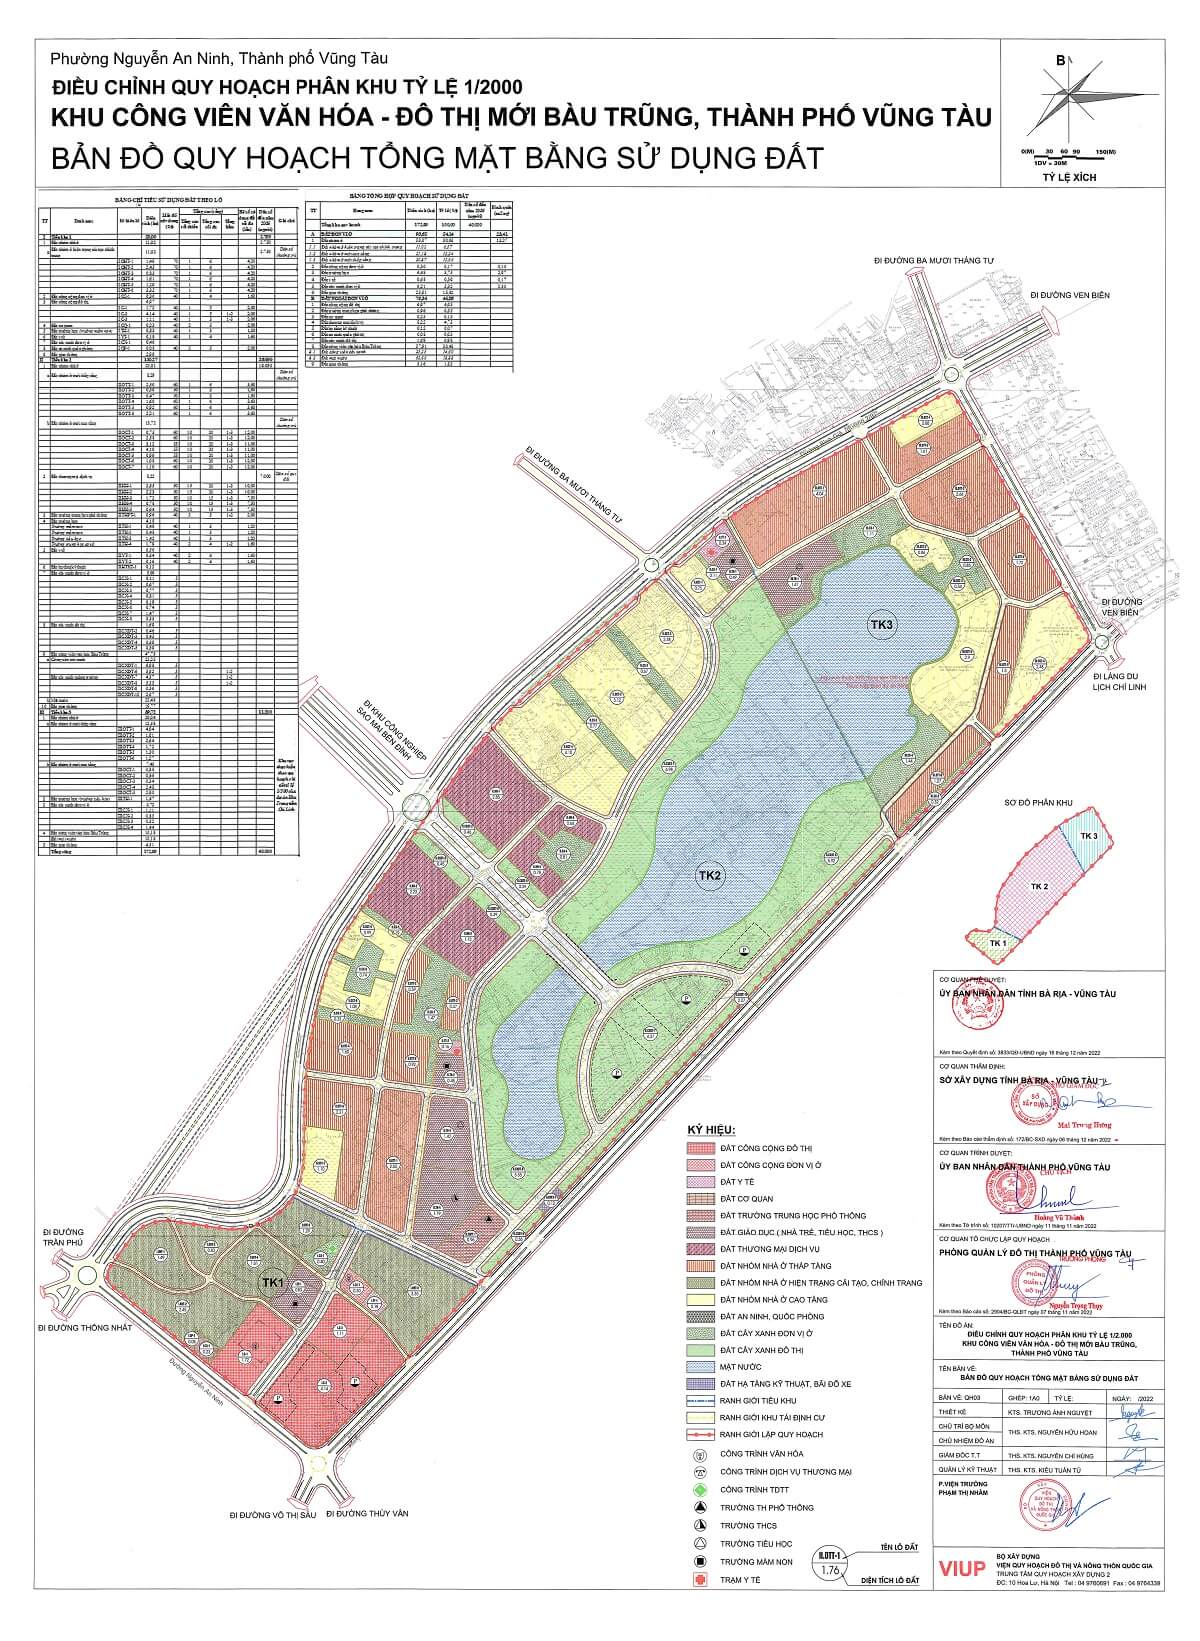 Bản đồ quy hoạch sử dụng đất khu đô thị mới Bàu Trũng - TP Vũng Tàu